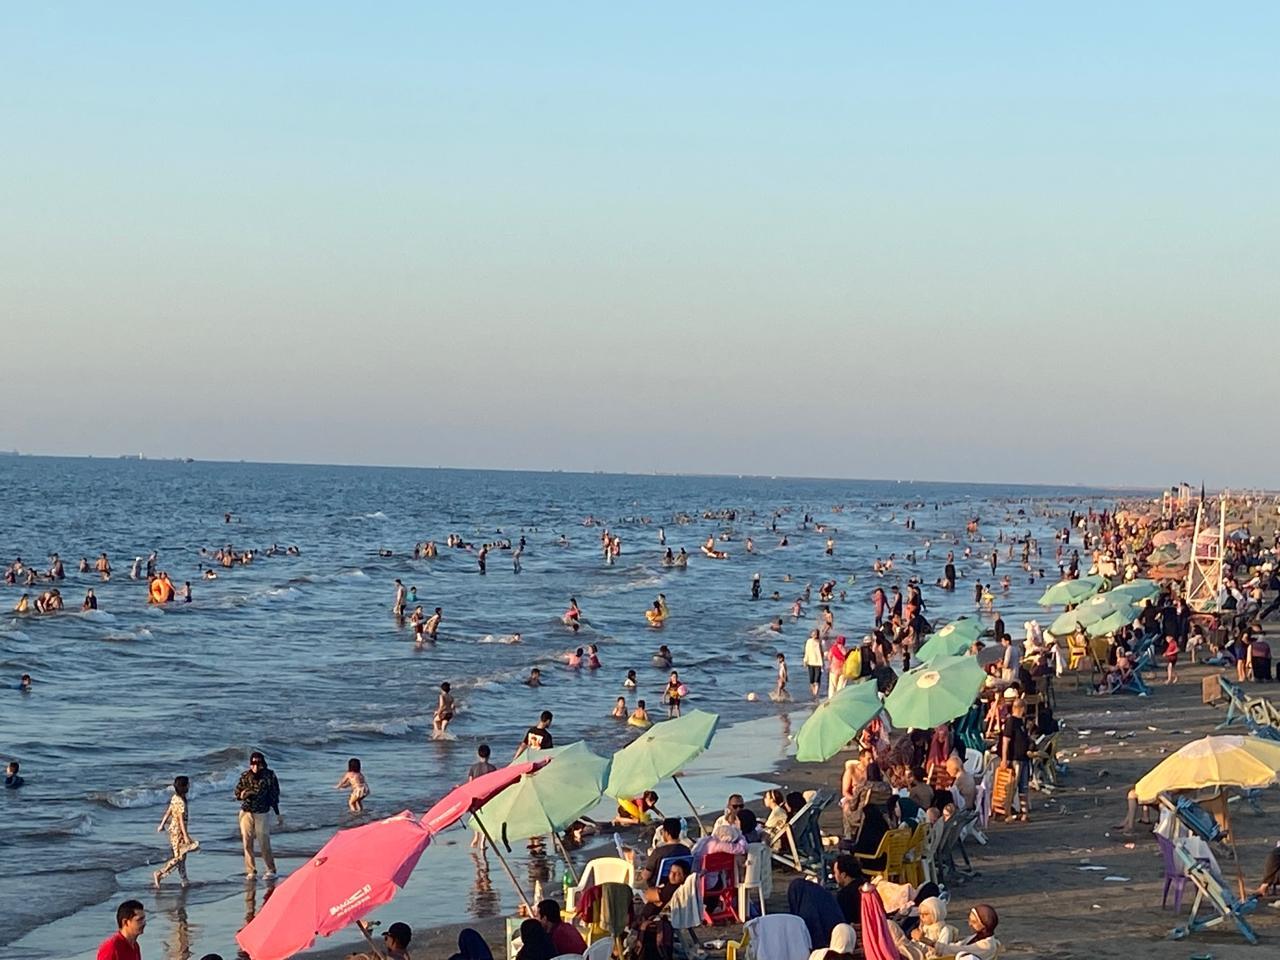 " إقبال كبير من الزائرين على شاطئ مدينة دمياط الجديدة "